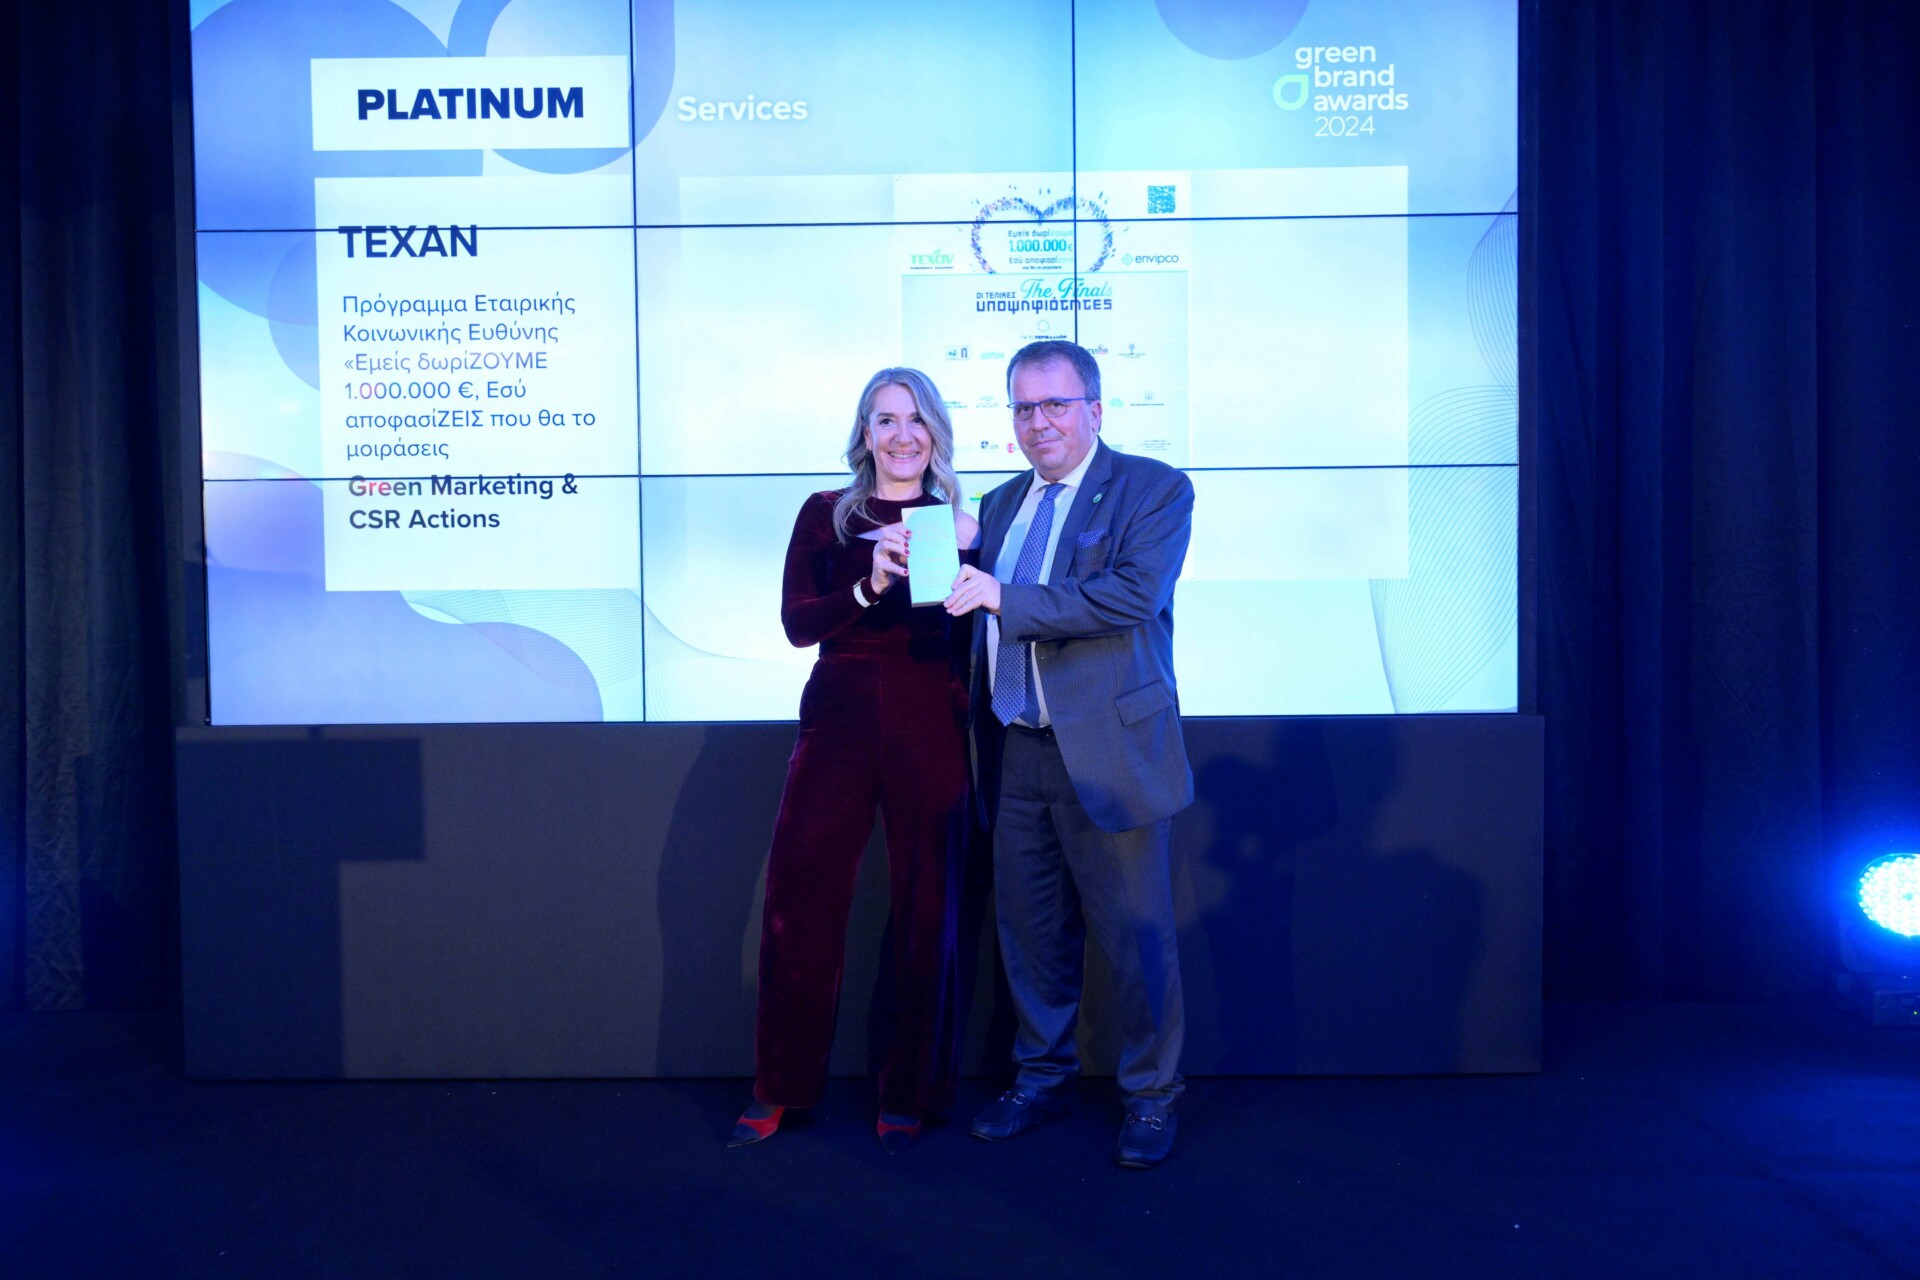 Ο κ. Απόστολος Μούργος, Πρόεδρος της ΤΕΧΑΝ, παραλαμβάνει το Platinum βραβείο στην κατηγορία Green Marketing & CSR Actions για το Πρόγραμμα Εταιρικής Κοινωνικής Ευθύνης «Εμείς δωρίζΟΥΜΕ 1.000.000 €, Εσύ αποφασίζΕΙΣ που θα το μοιράσεις μαζί με την κα Κωνσταντίνα Σκαναβή, Πρόεδρο της Κριτικής Επιτροπής & Καθηγήτρια του Πανεπιστημίου Δ. Αττικής © ΤΕΧΑΝ